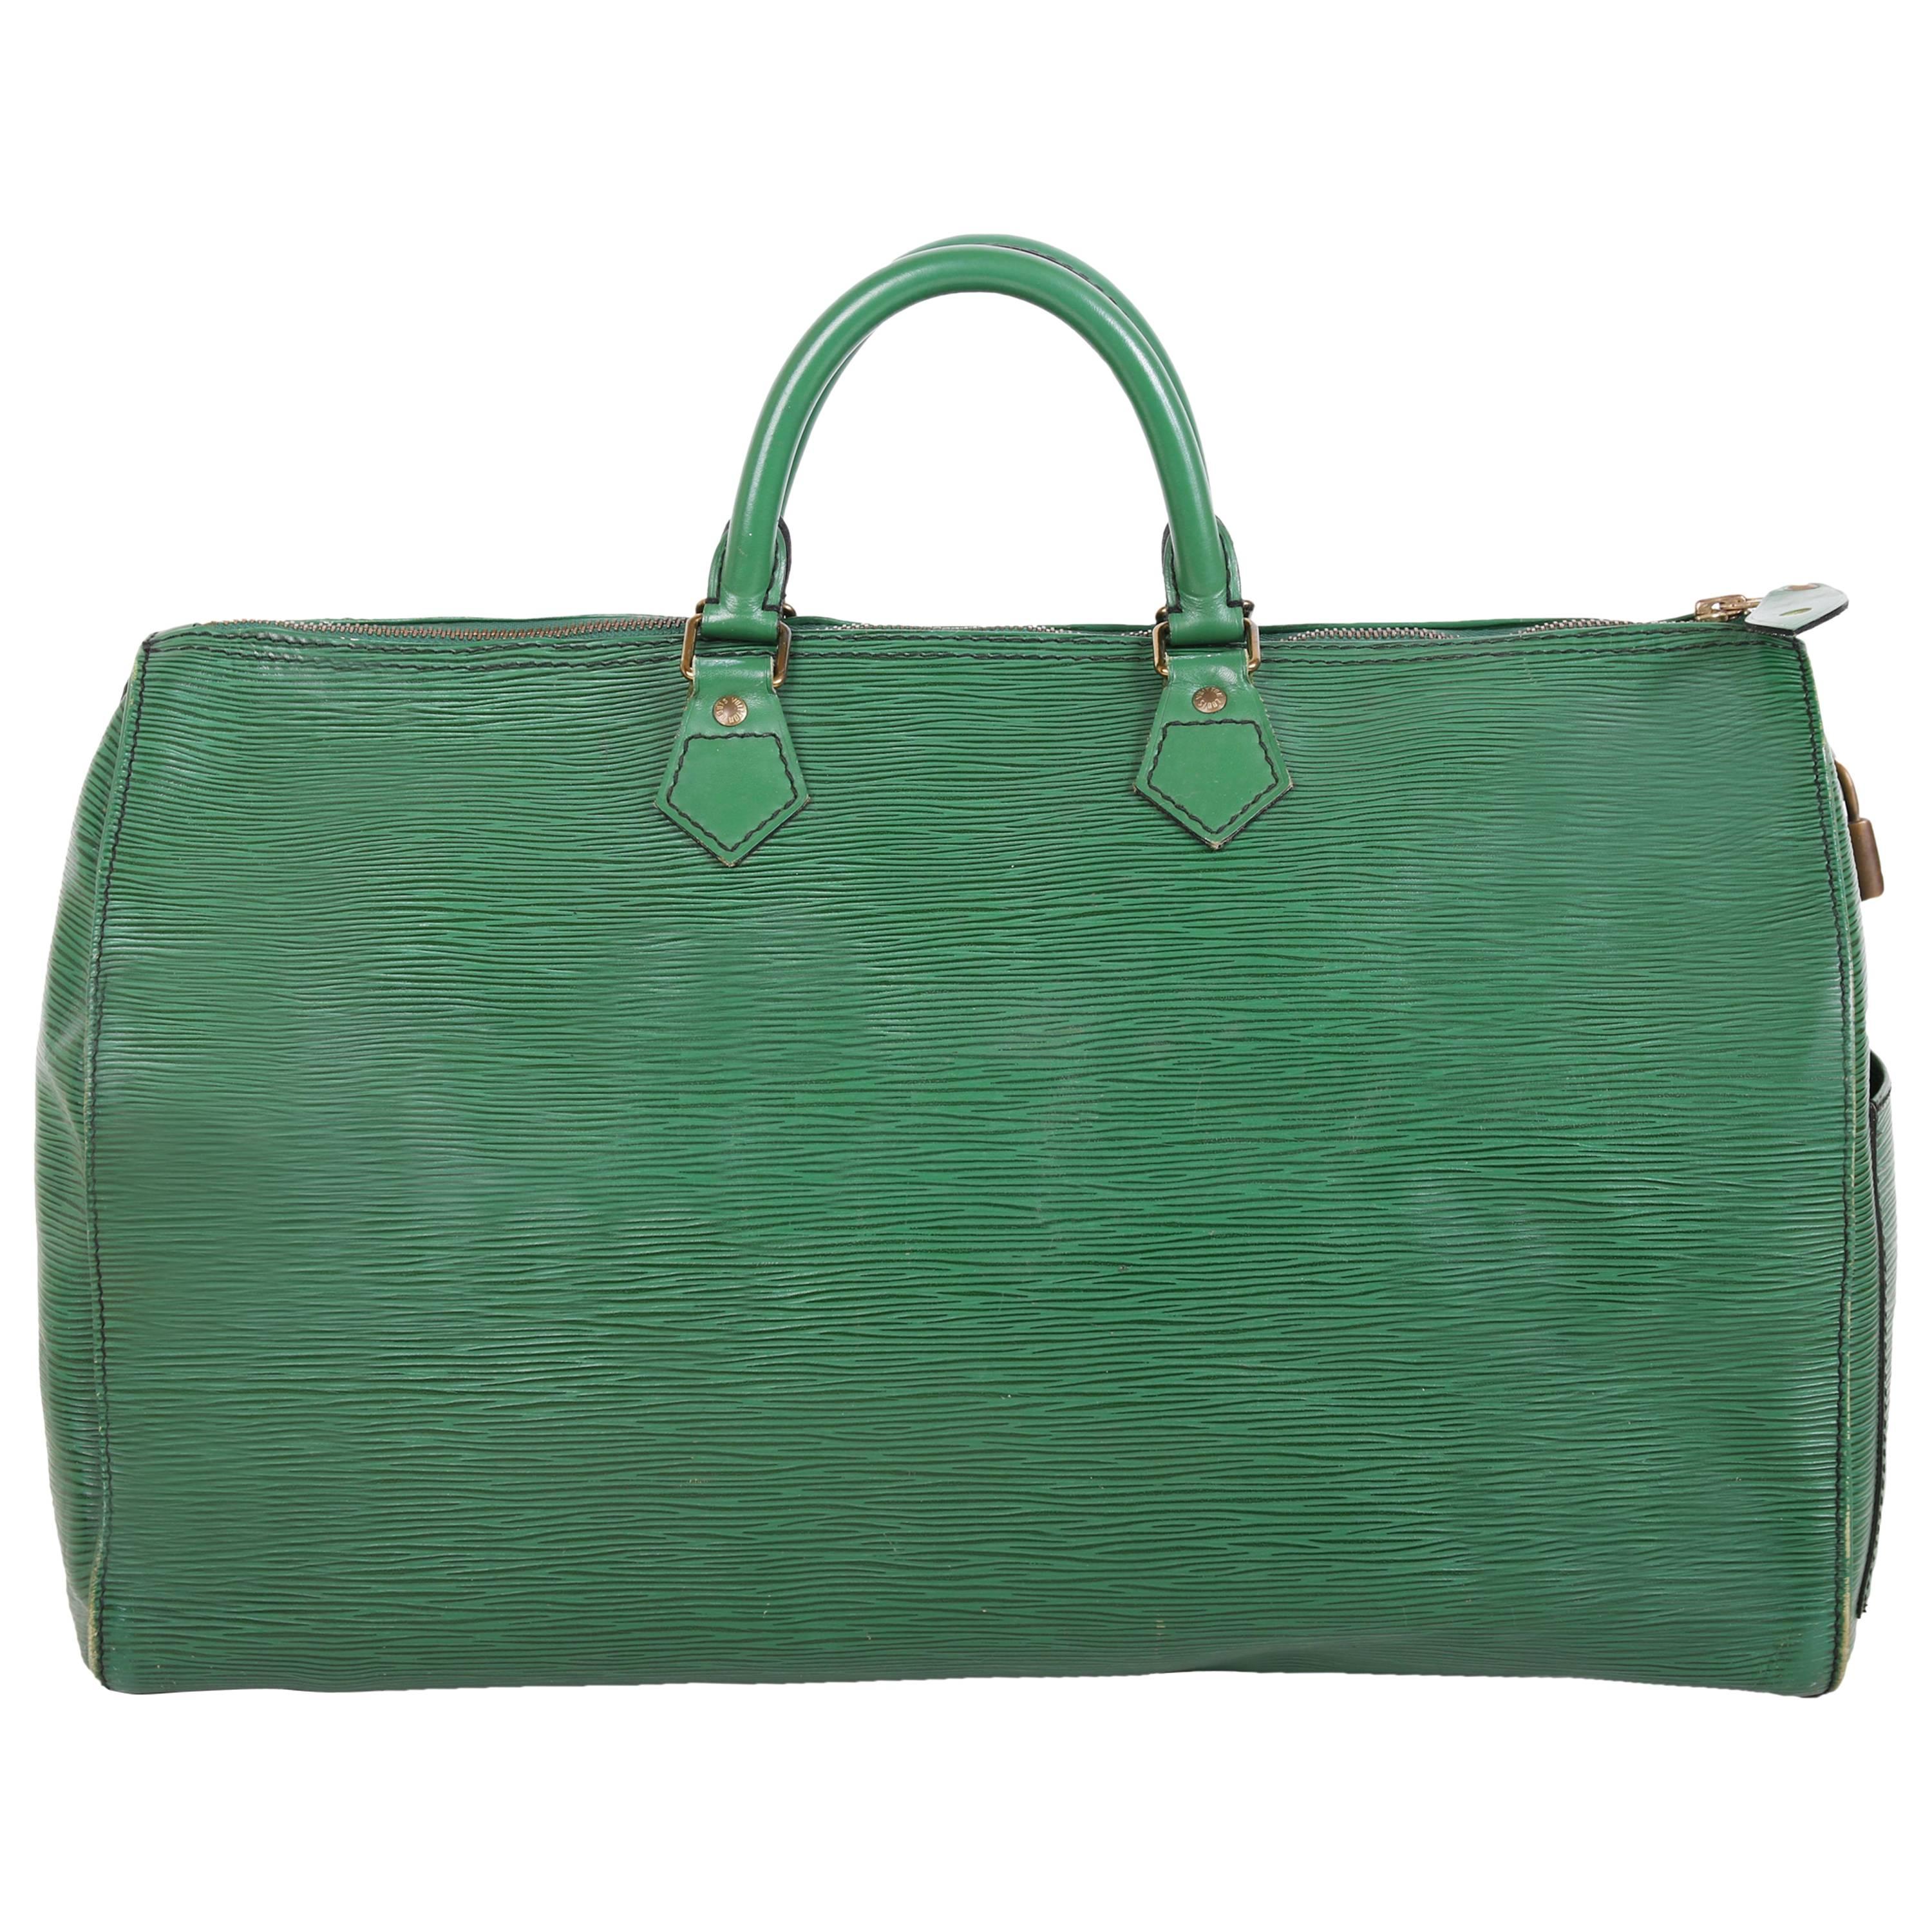 Louis Vuitton Green Epi Leather Speedy Bag, 1990 